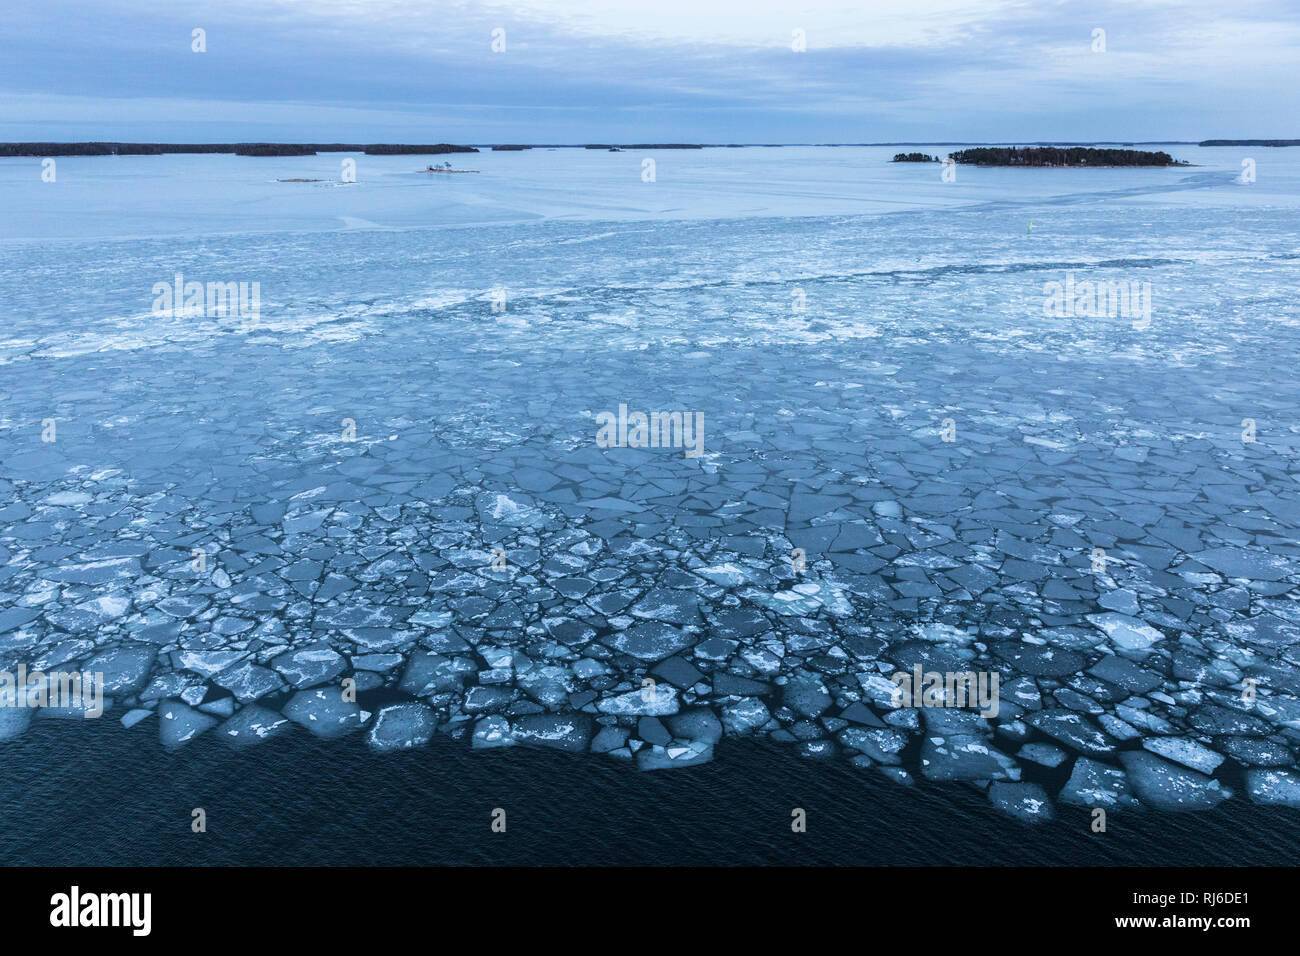 Finnland, Helsinki, Eisschollen auf der Ostsee mit Landschaft Foto Stock